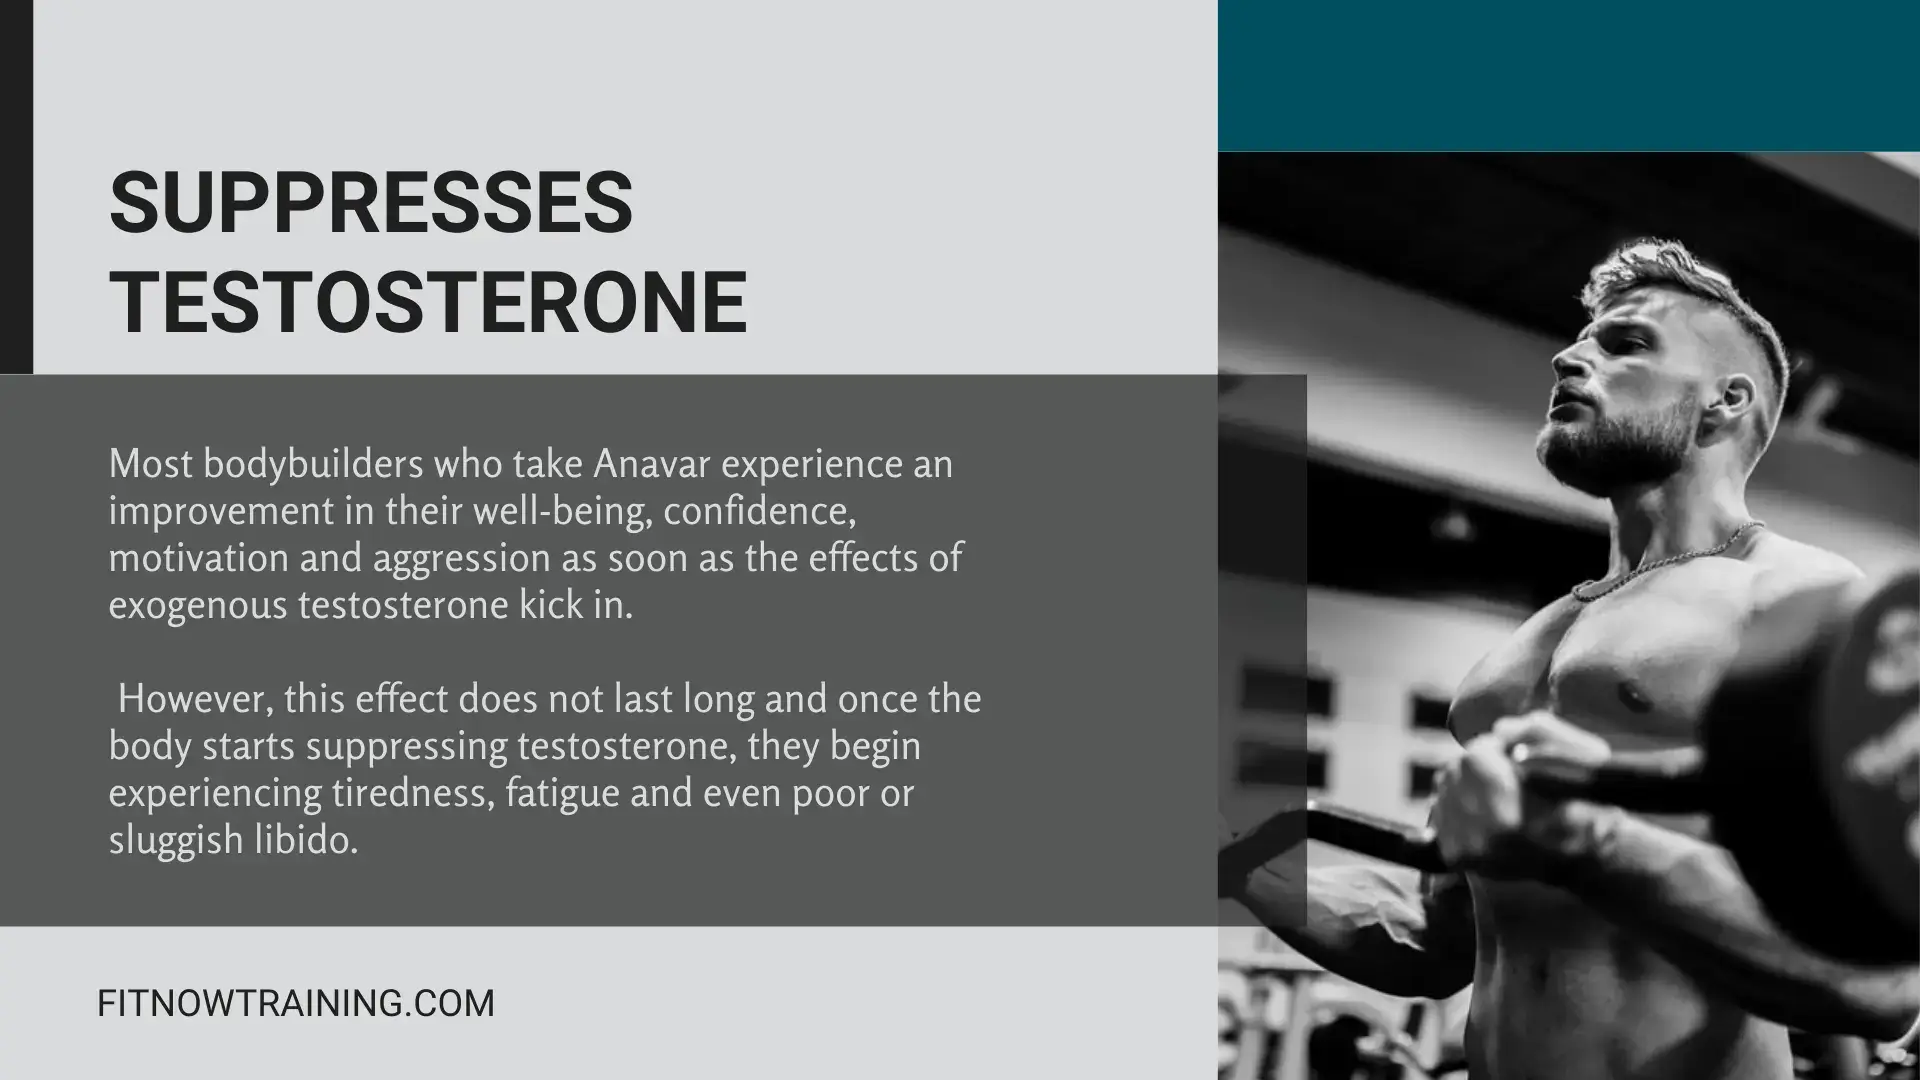 Suppresses Testosterone